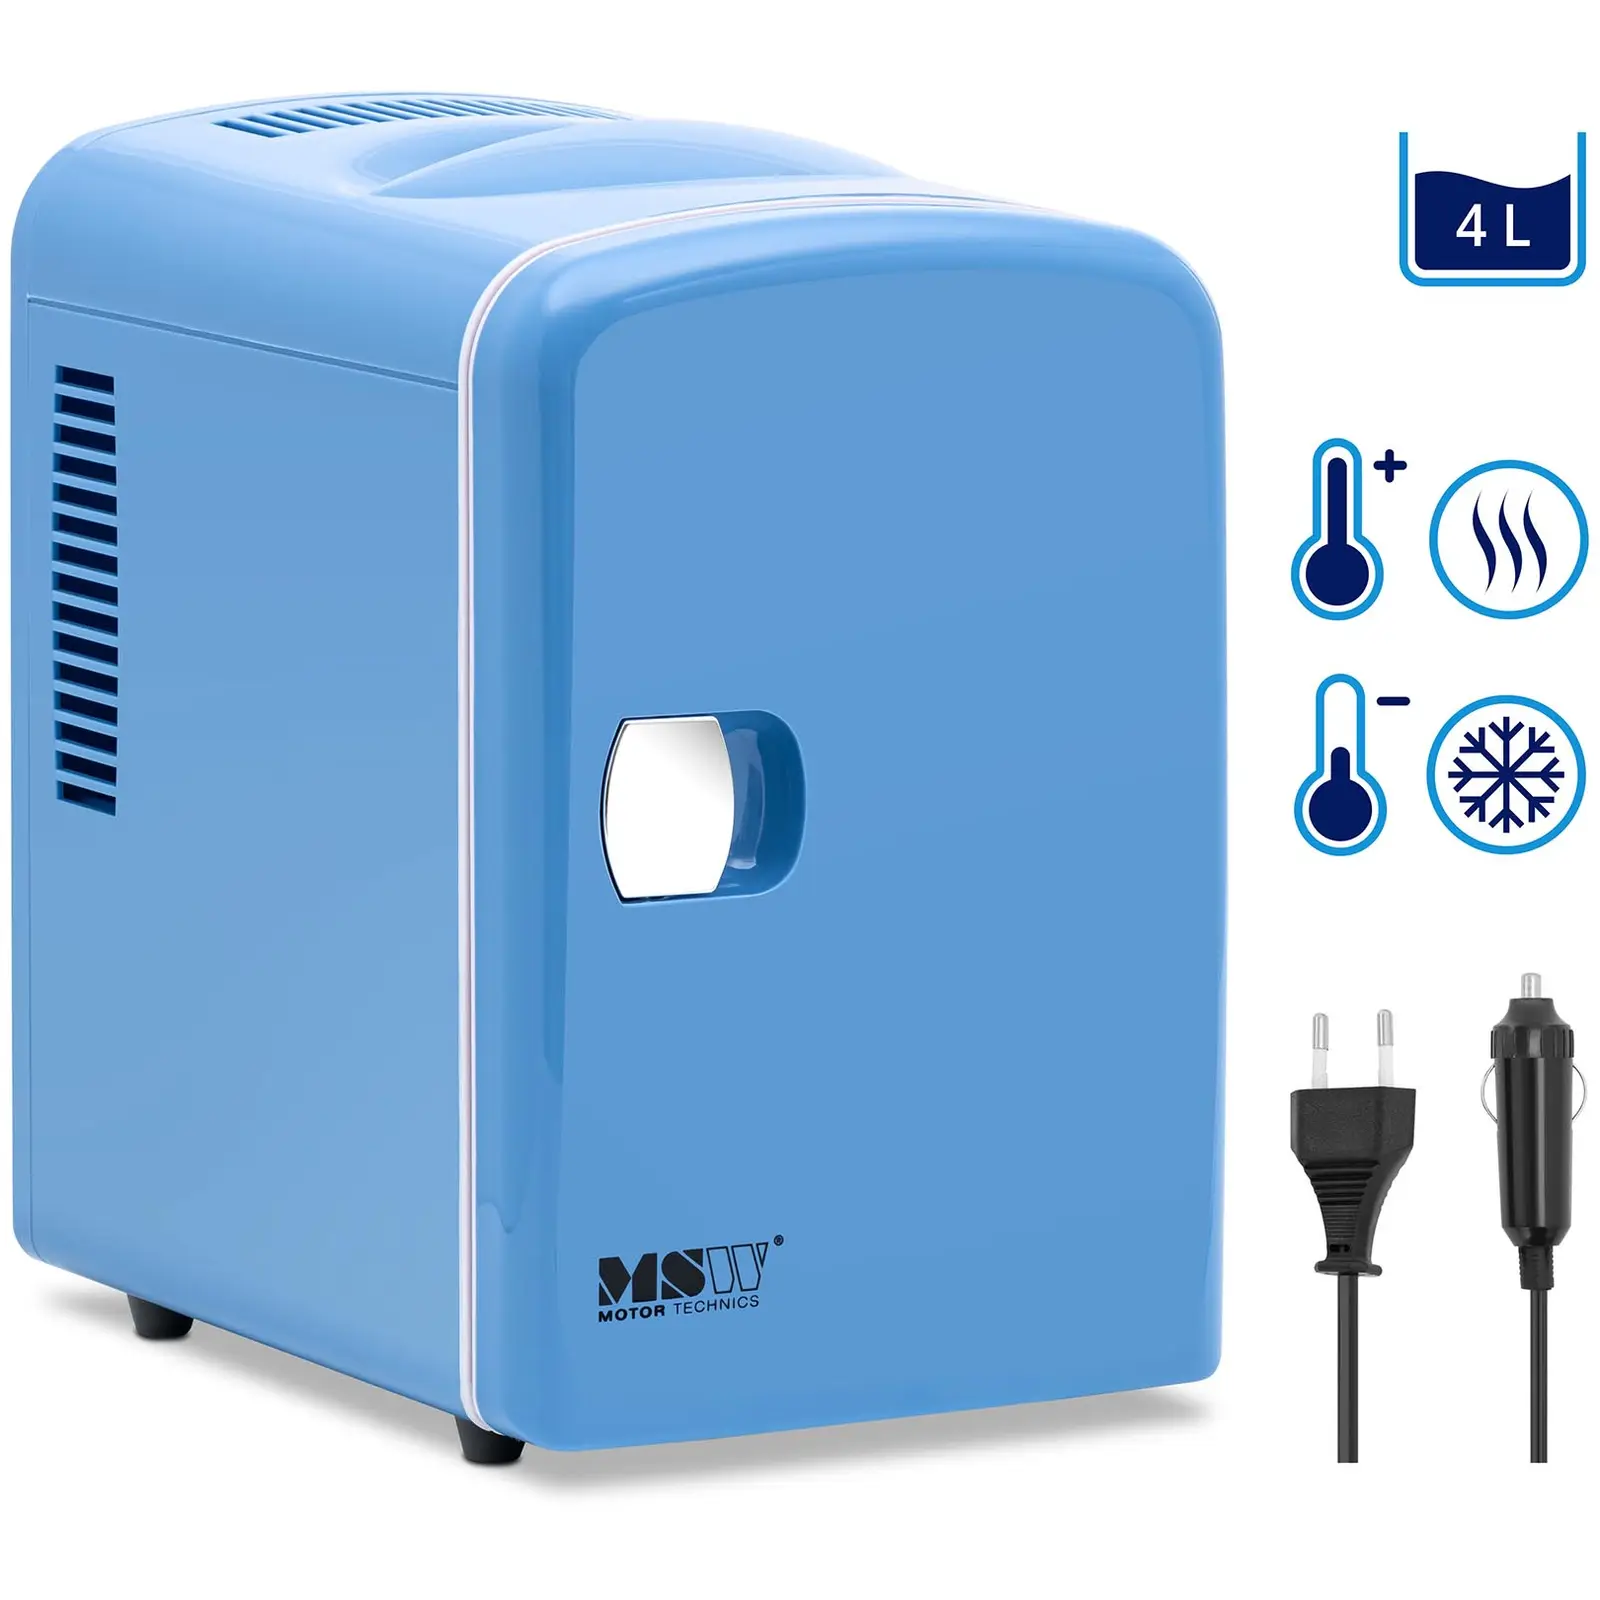 Minikjøleskap 12 V / 230 V - 2-i-1 apparat med holde-varm funksjon - 4 L - Blå